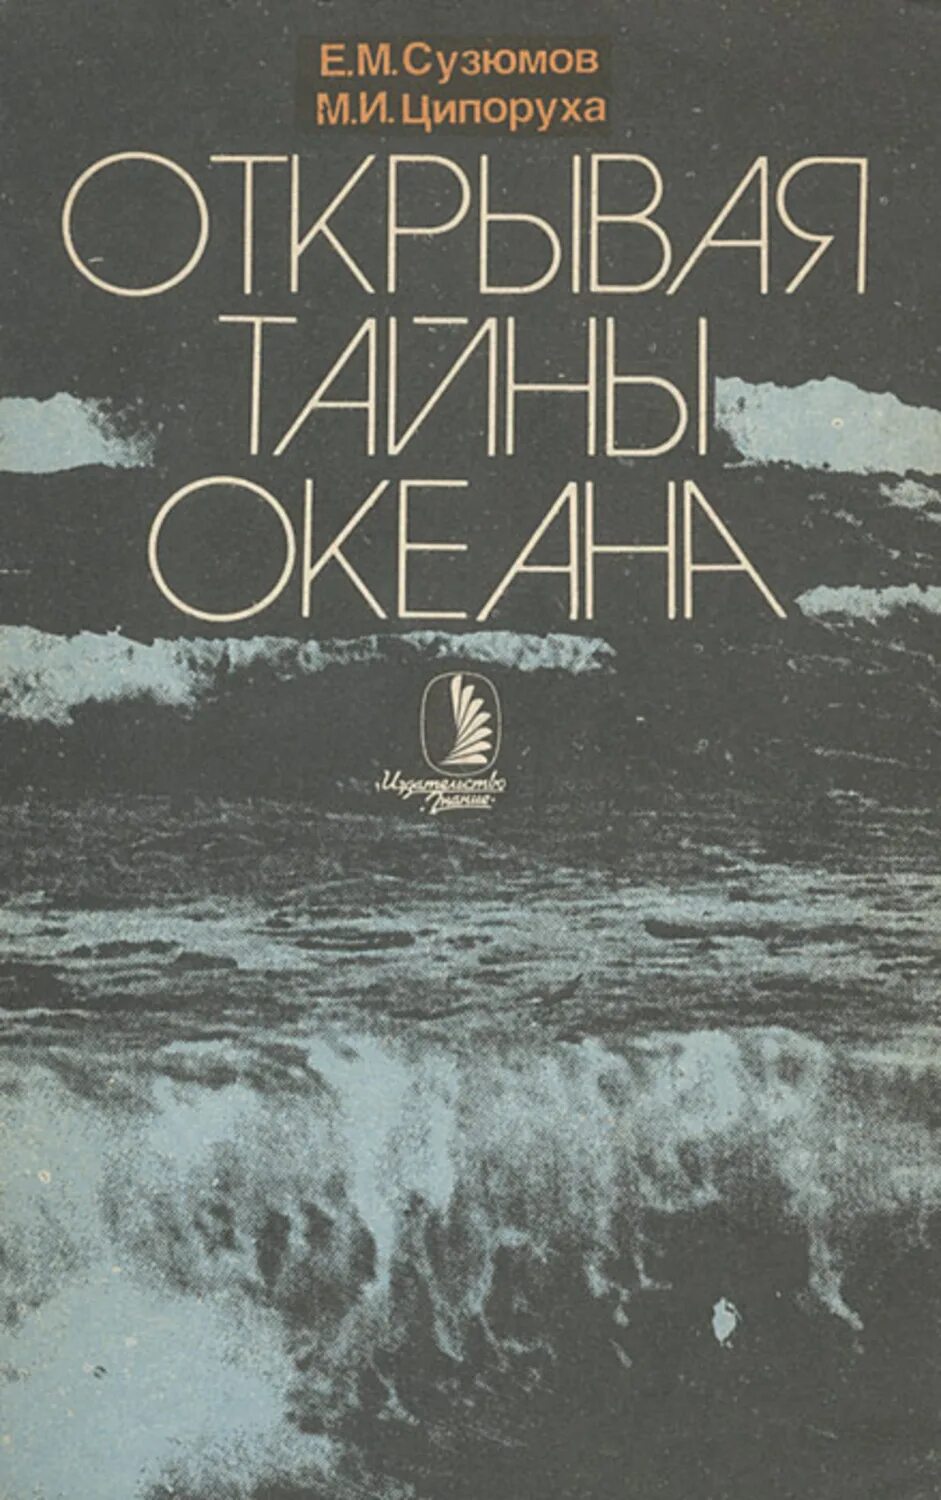 Тайны океанов книга. Е.М Сузюмов книги. Раскрывая тайны океана книга.